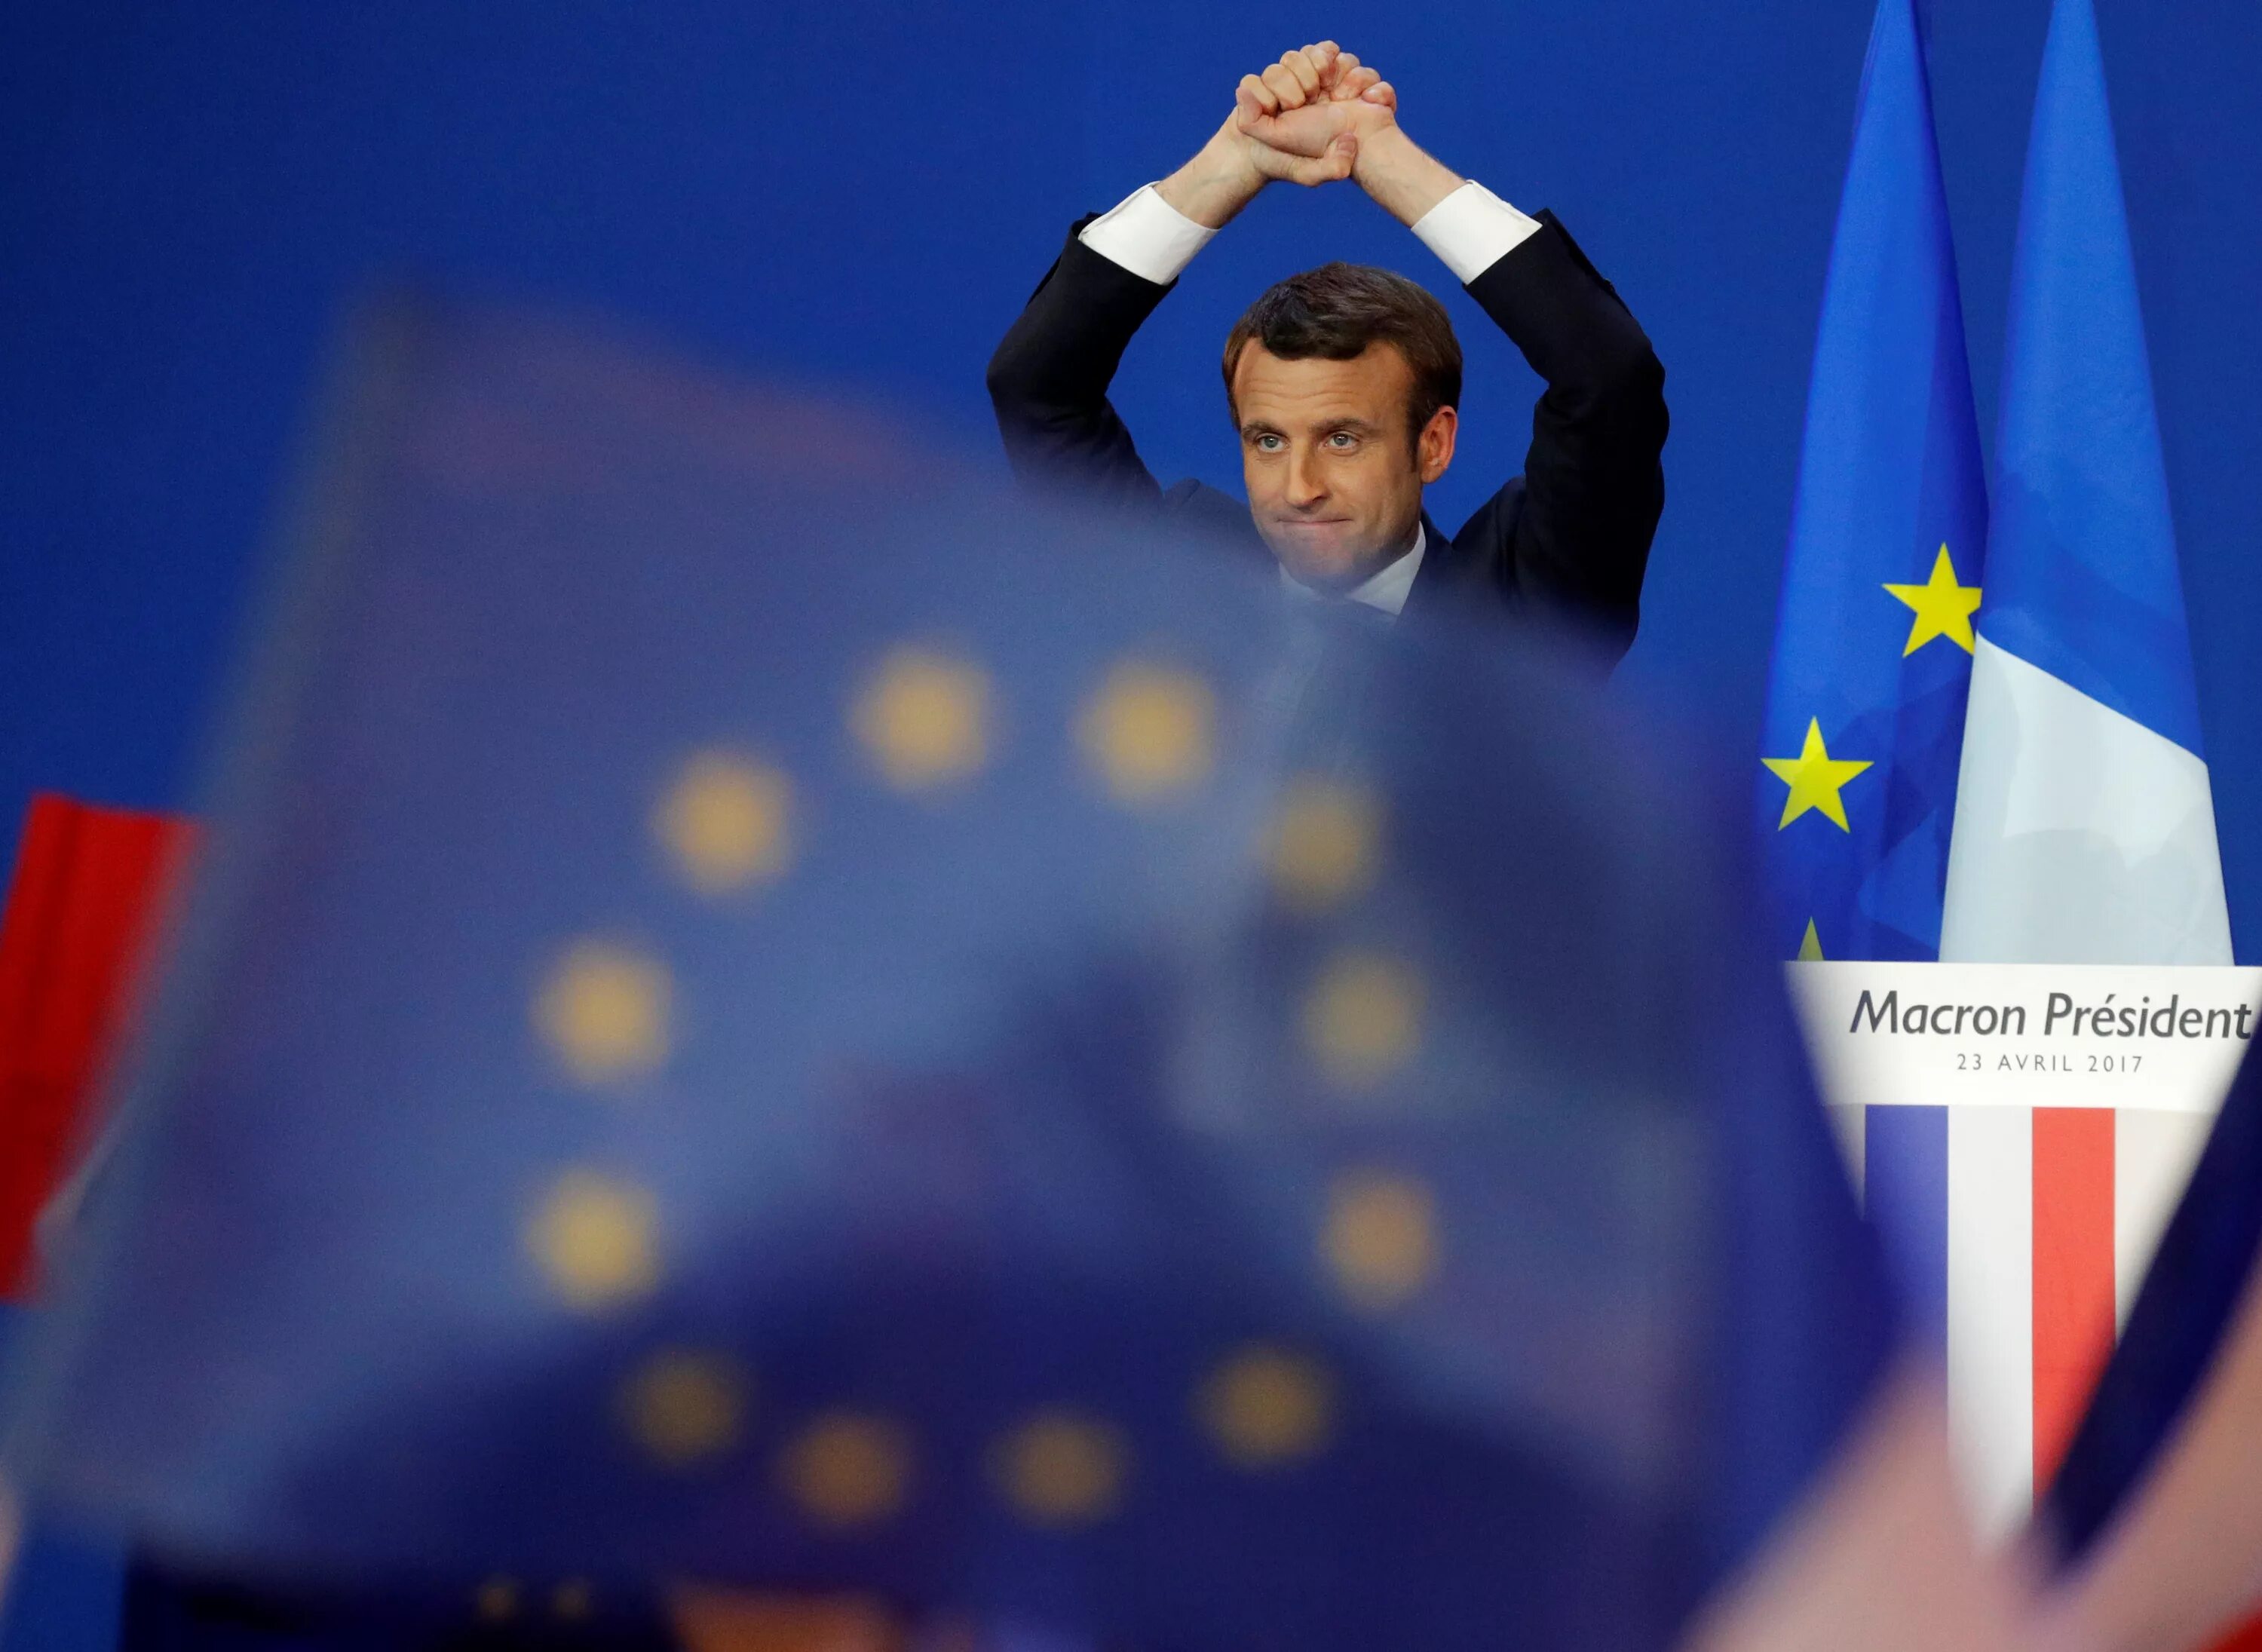 Макрон и Европейский Союз. Франция ЕС. Макрон и реформирование ЕС. Макрон на фоне флага Евросоюза.